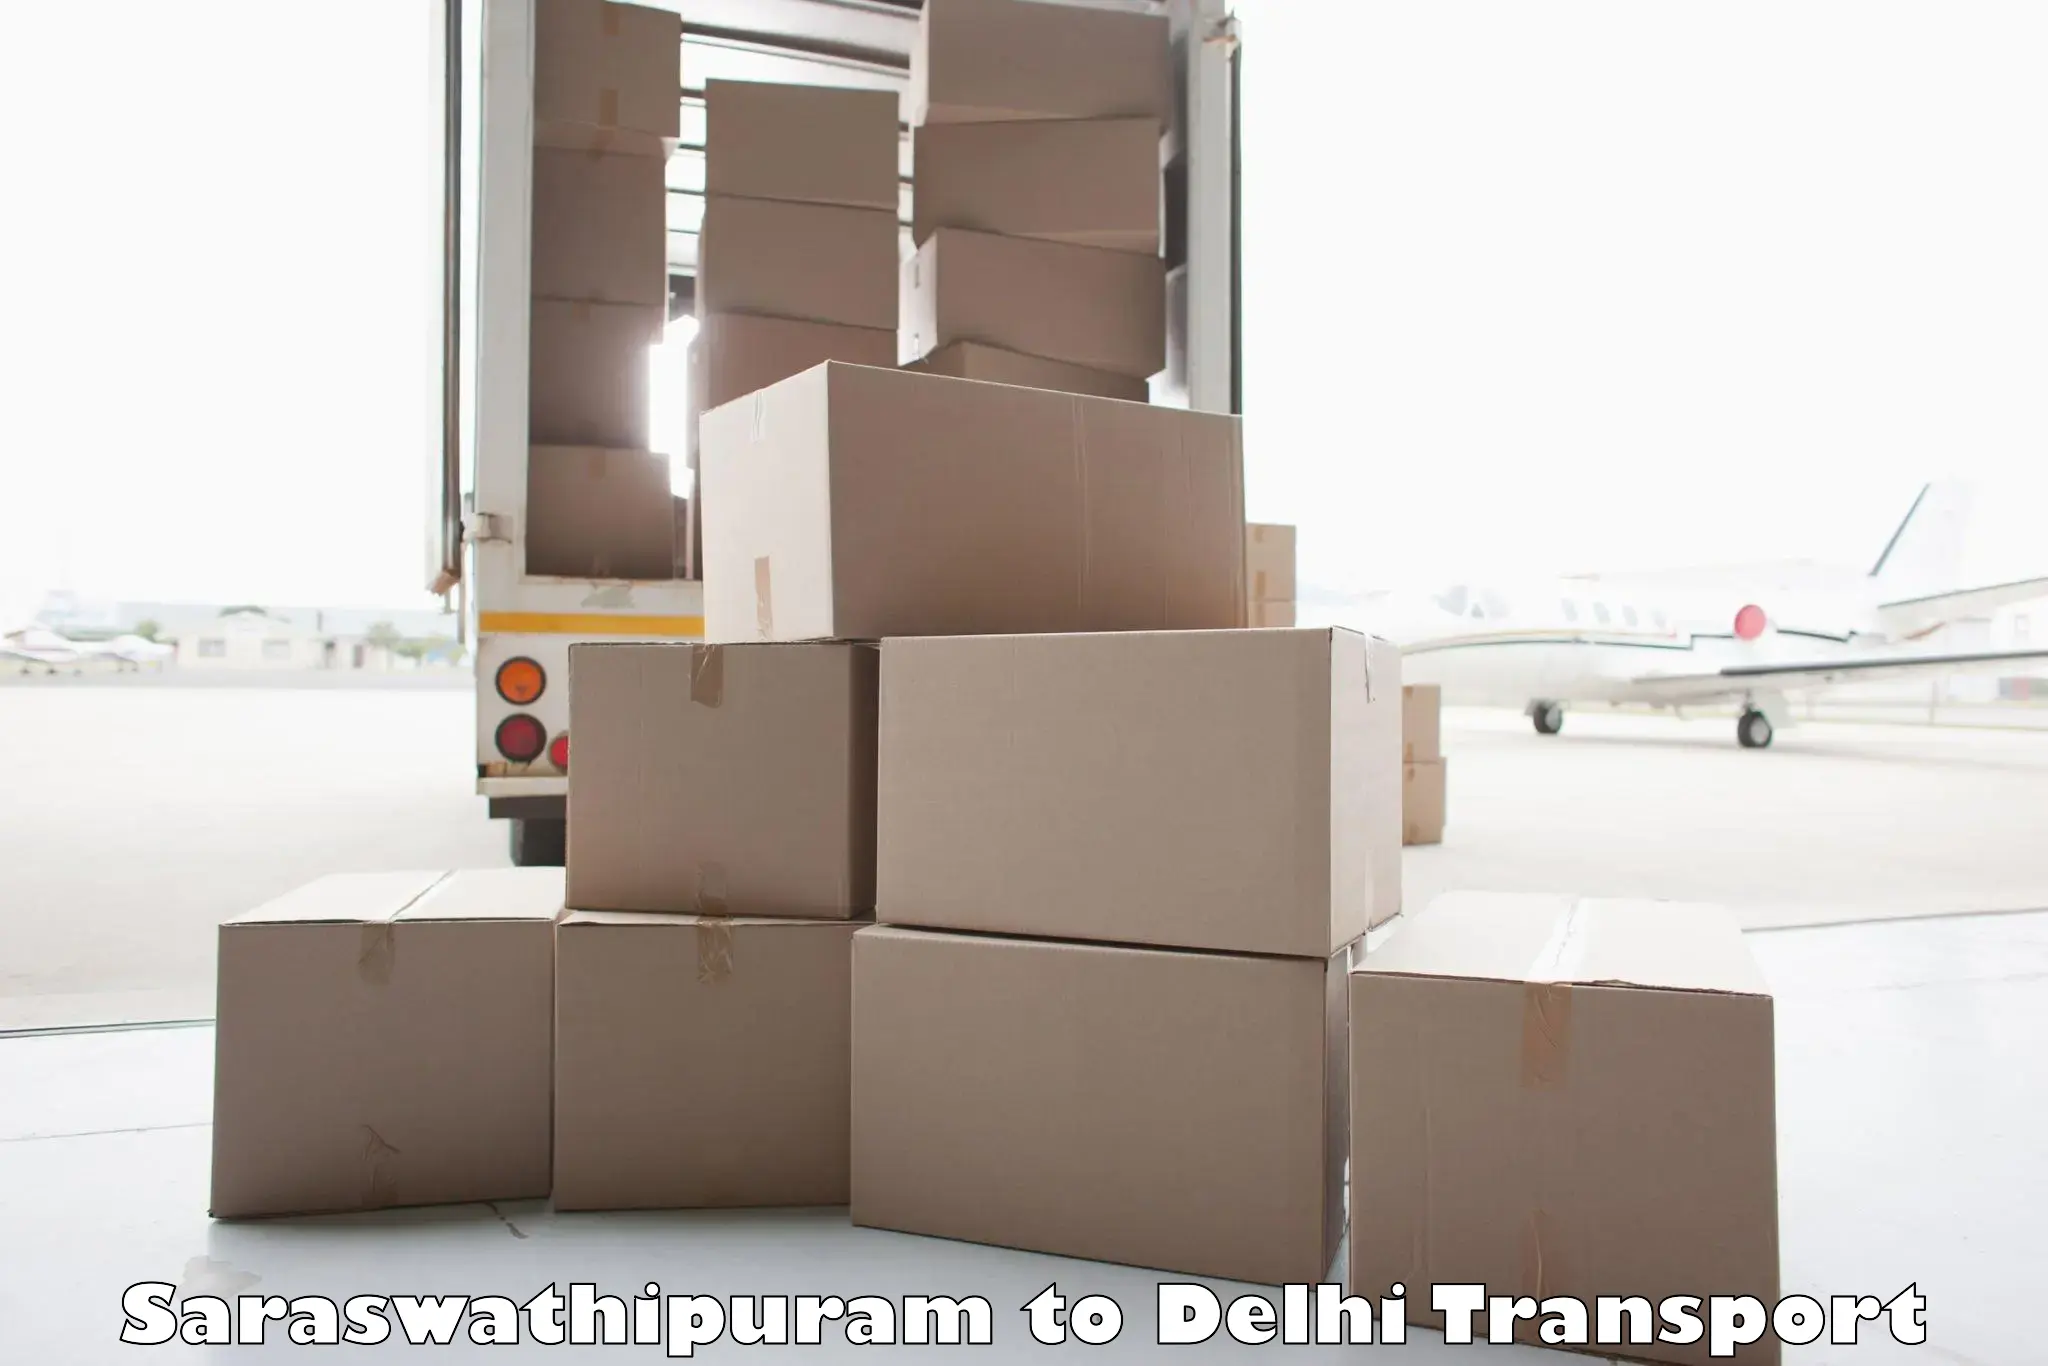 Interstate transport services Saraswathipuram to Lodhi Road